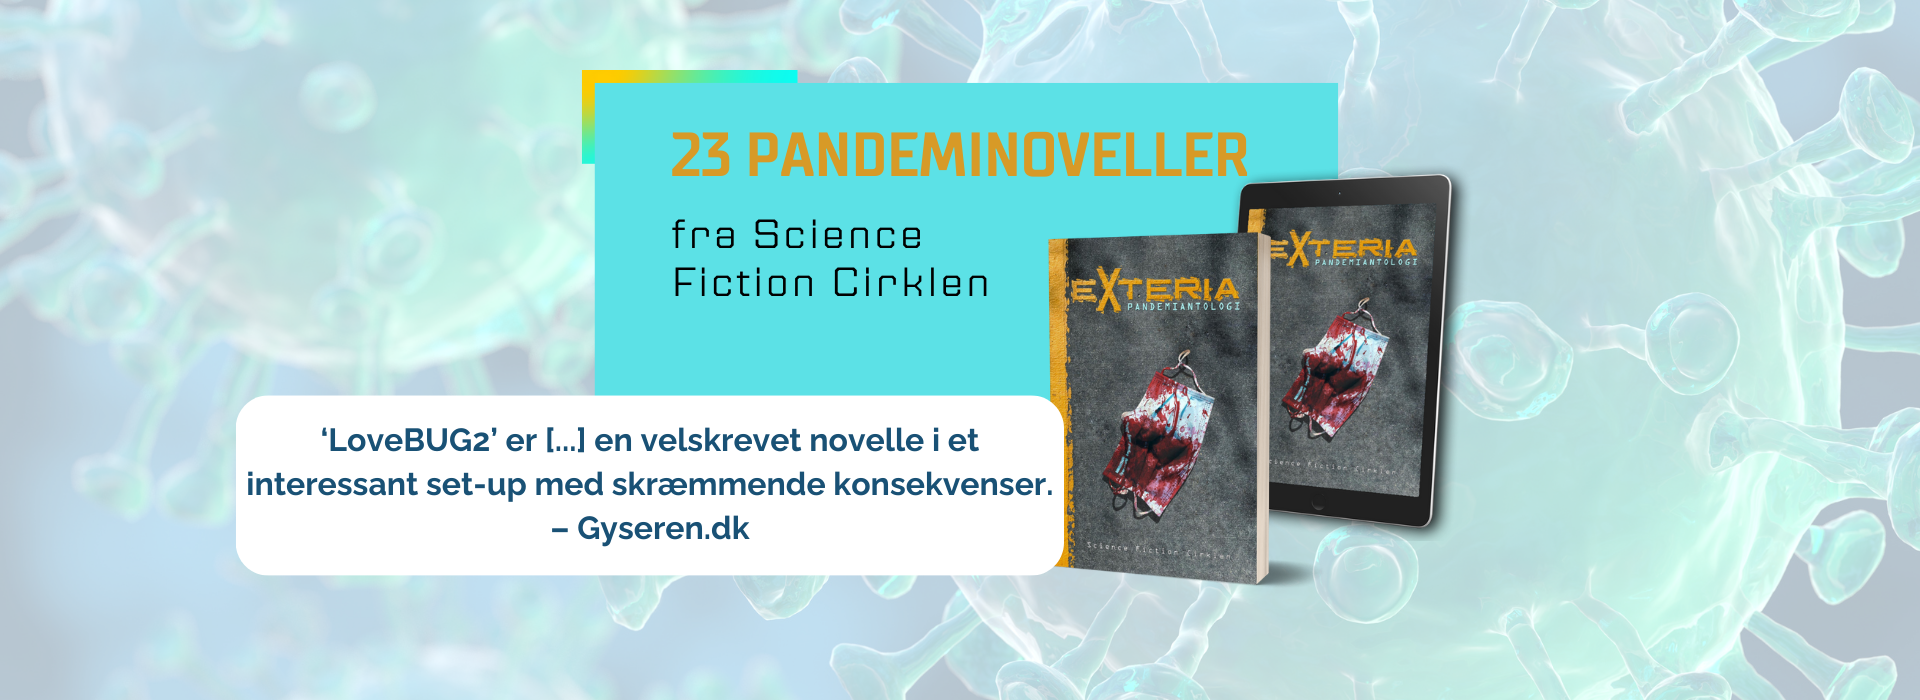 Exteria: Pandemiantologi, 23 pandeminoveller fra Science Fiction Cirklen. 'LoveBUG2' er en velskrevet novelle i et interessant set-up med skræmmende konsekvenser. - Gyseren.dk